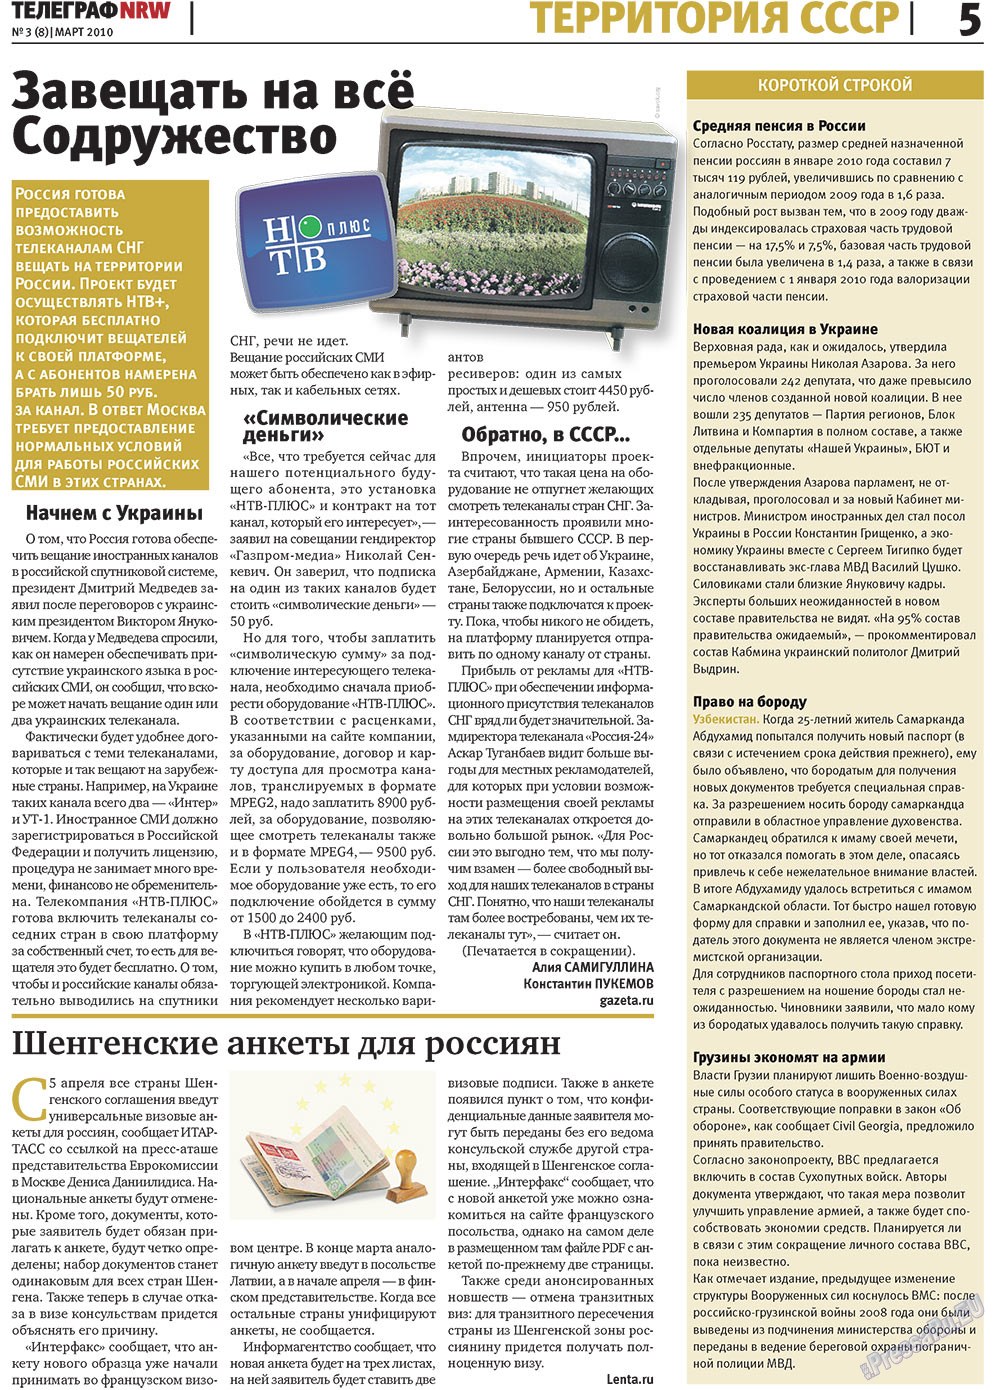 Телеграф NRW (газета). 2010 год, номер 3, стр. 5